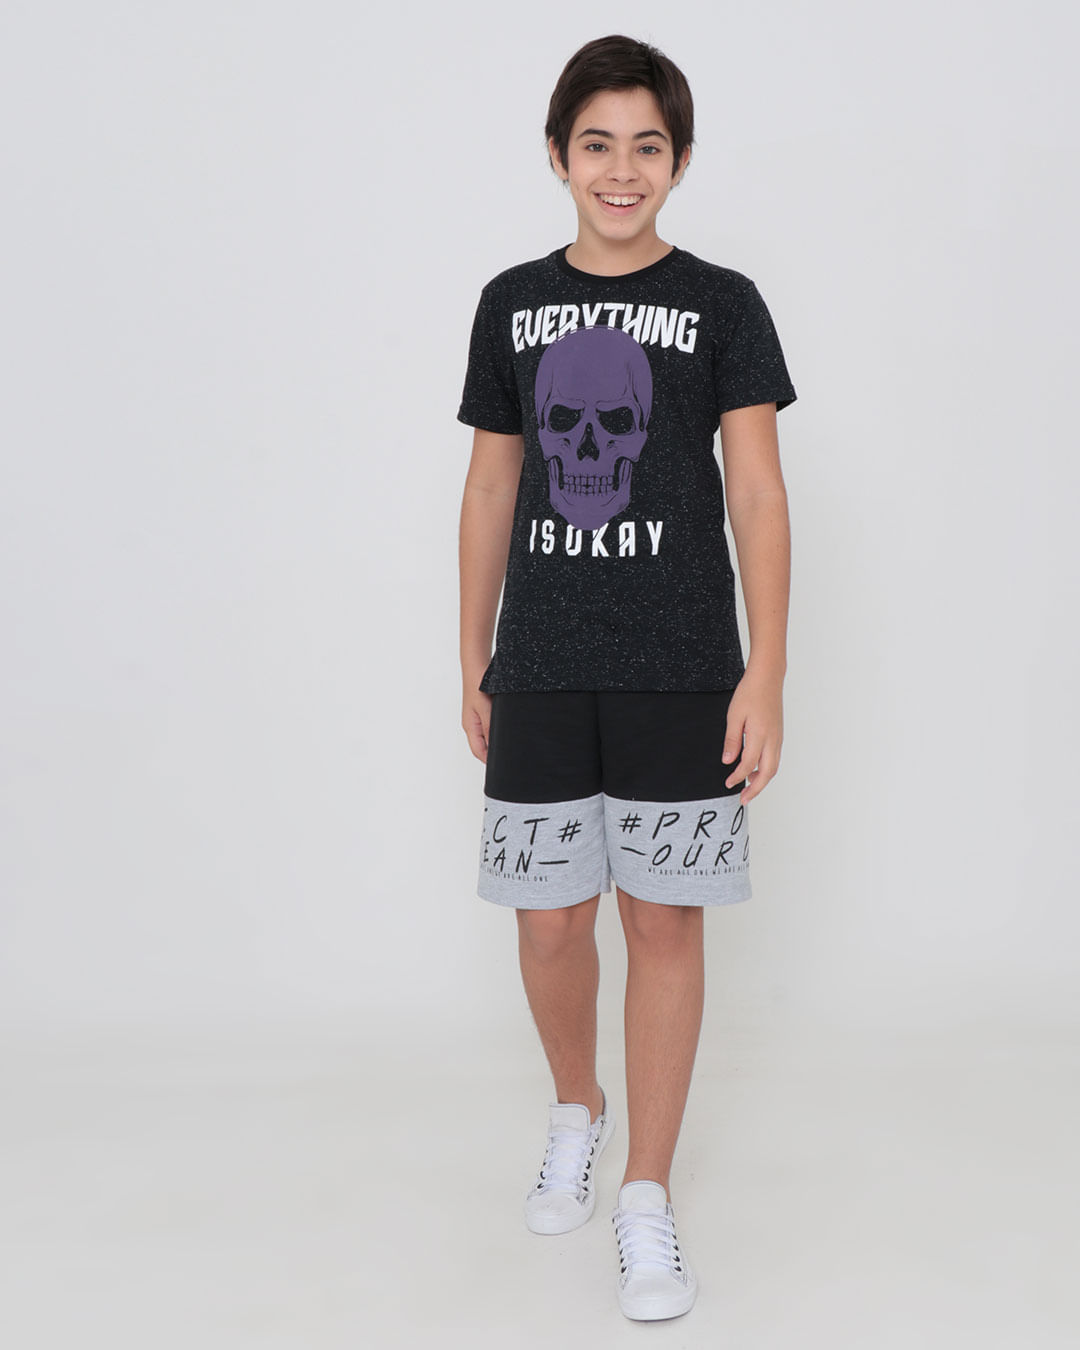 Camiseta-Juvenil-Manga-Curta-Estampa-Caveira-Preta